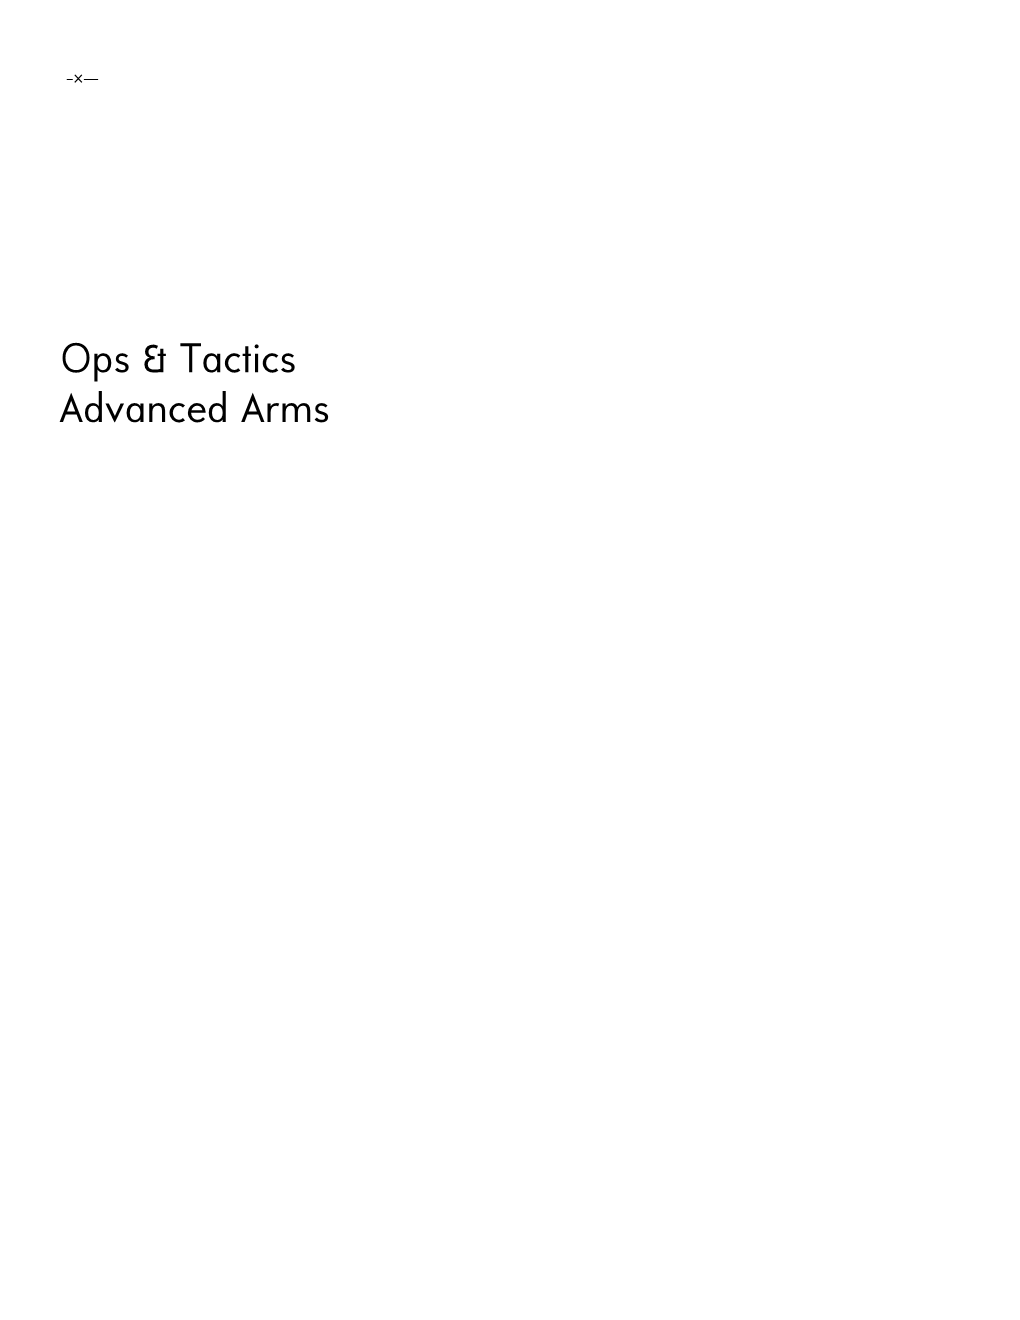 Ops & Tactics Advanced Arms